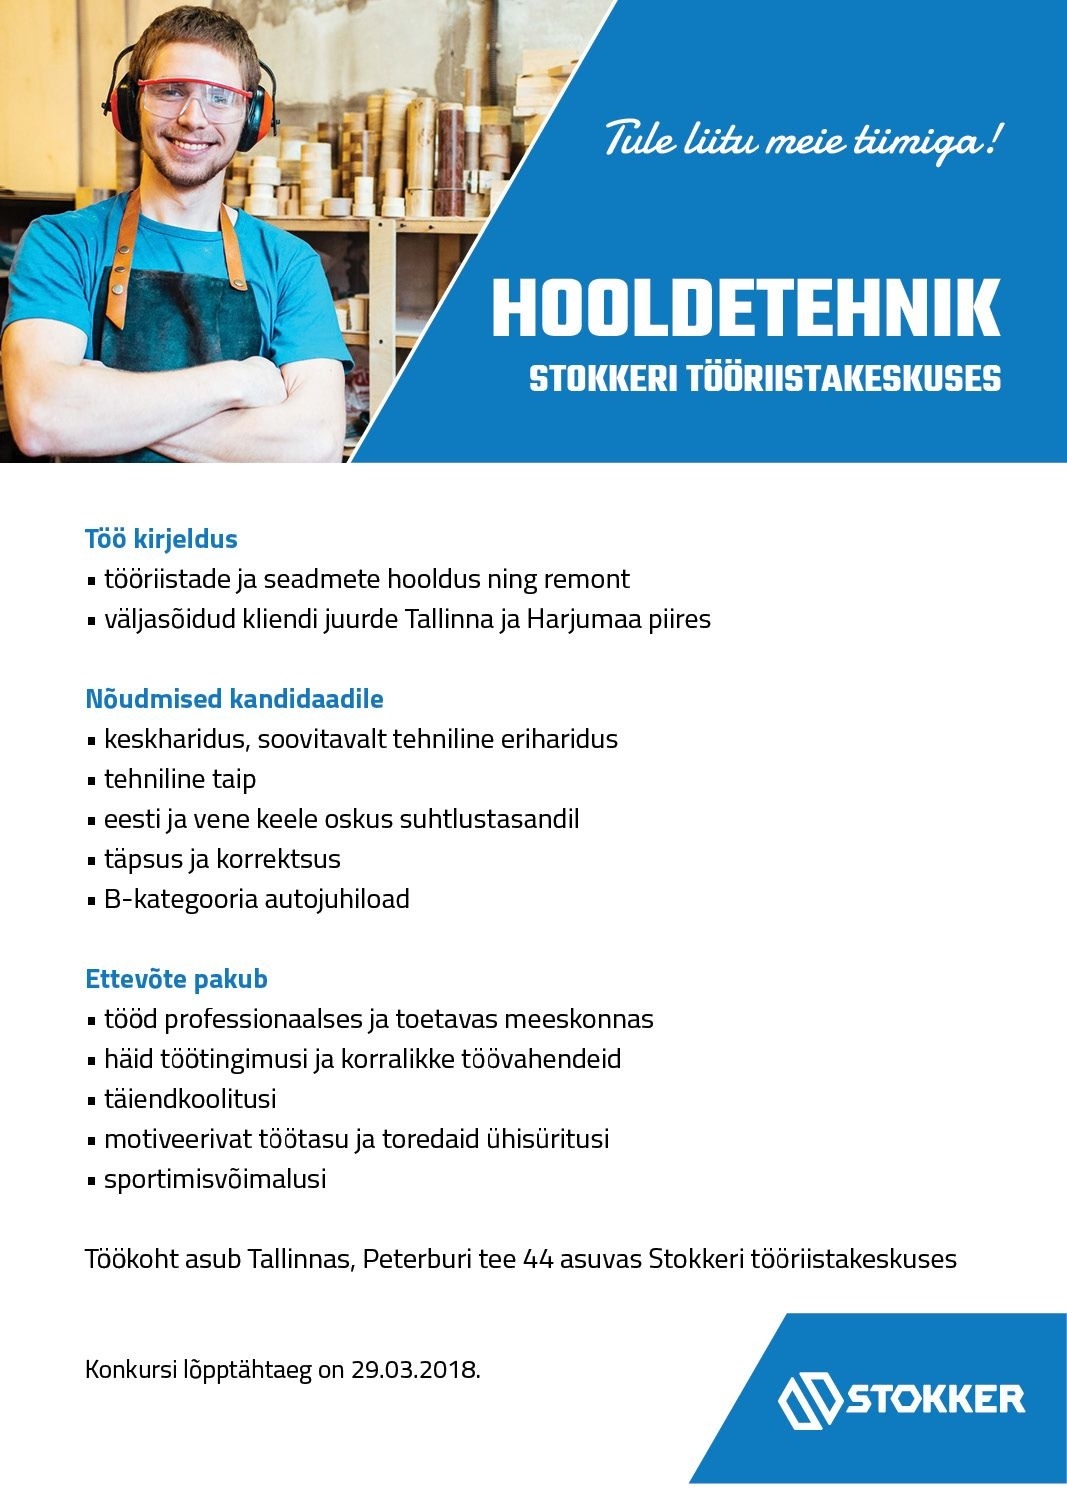 Stokker AS Hooldetehnik Stokkeri tööriistakeskuses